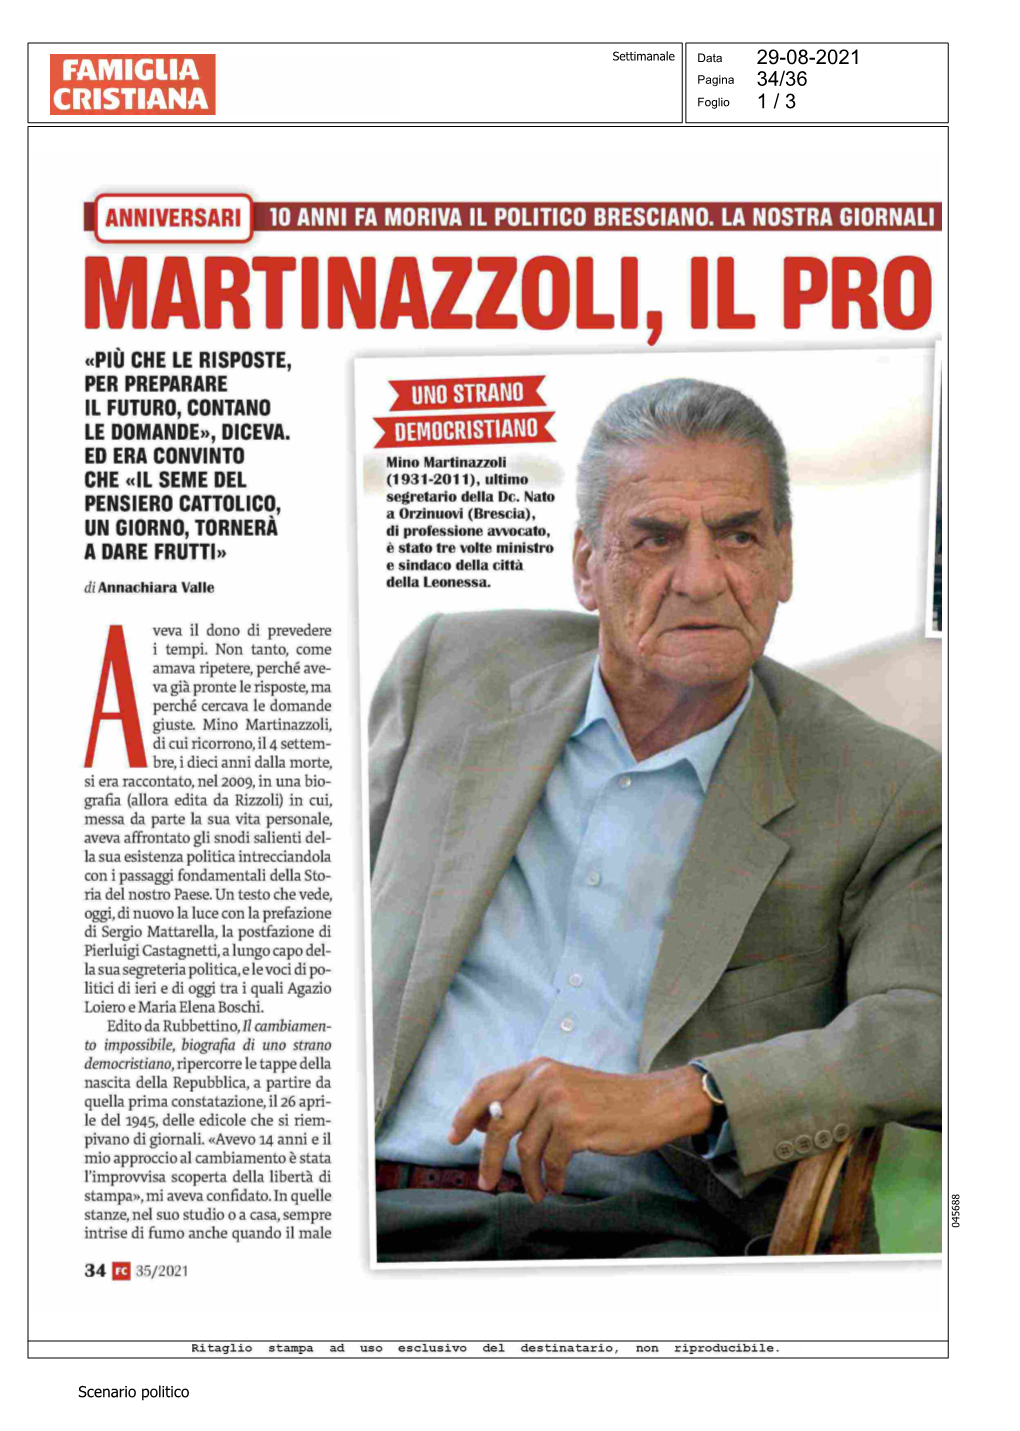 Martinazzoli, Il Profeta Della Politica